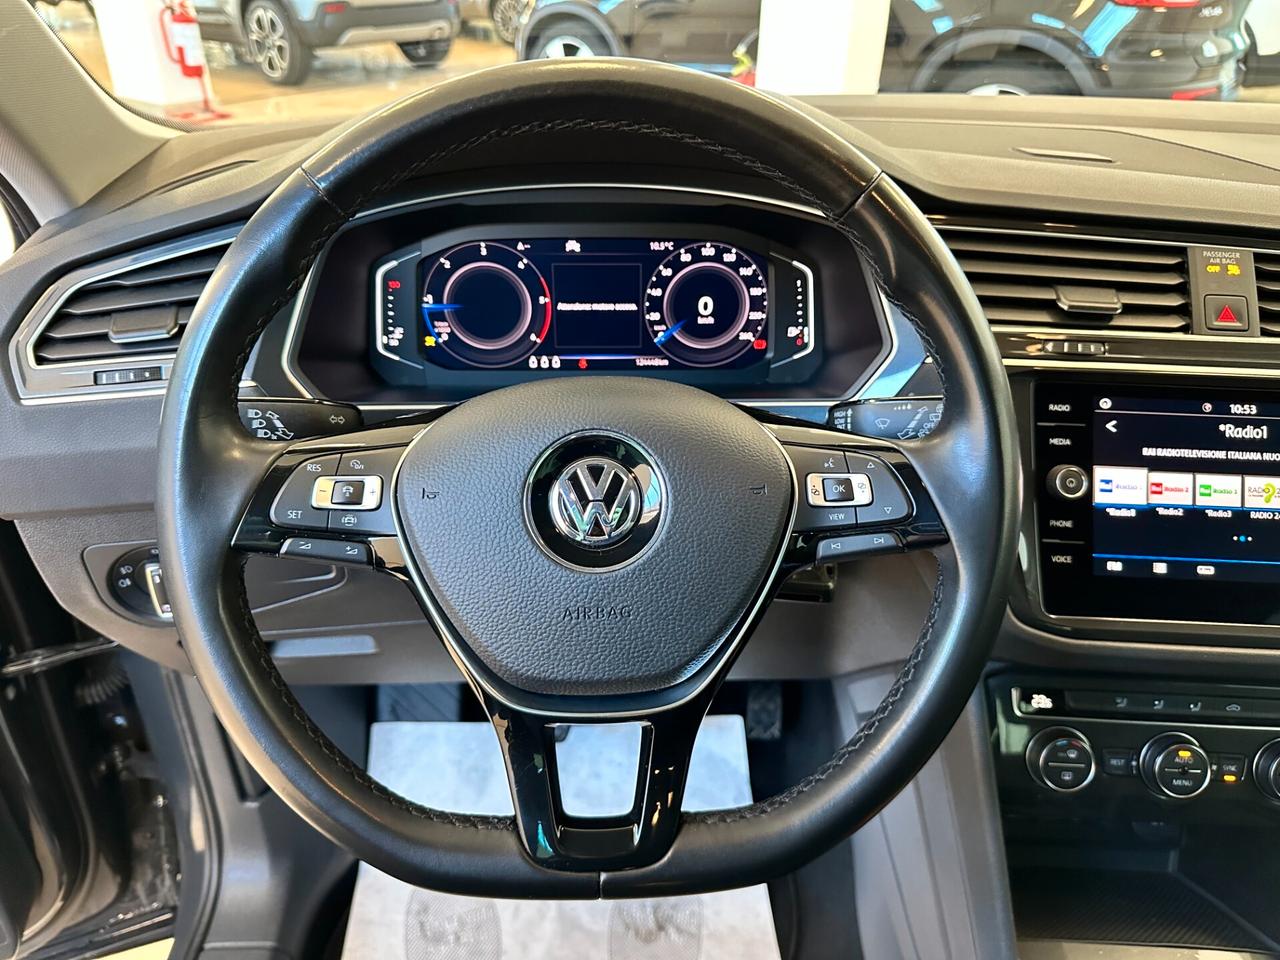 Volkswagen Tiguan 1.6 tdi Business 115cv